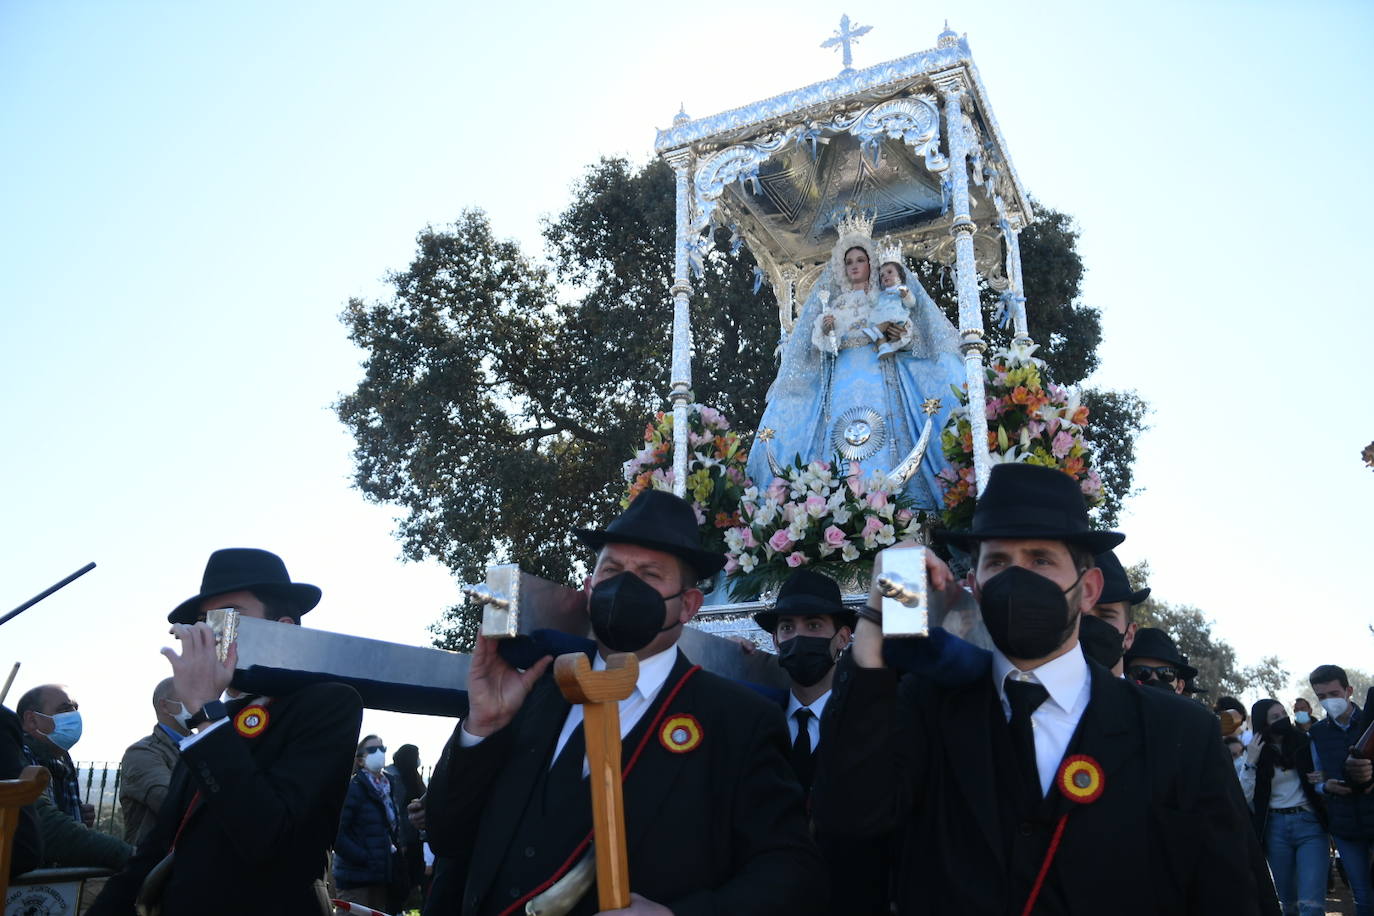 La romería de la Virgen de Luna en Pozoblanco, en imágenes